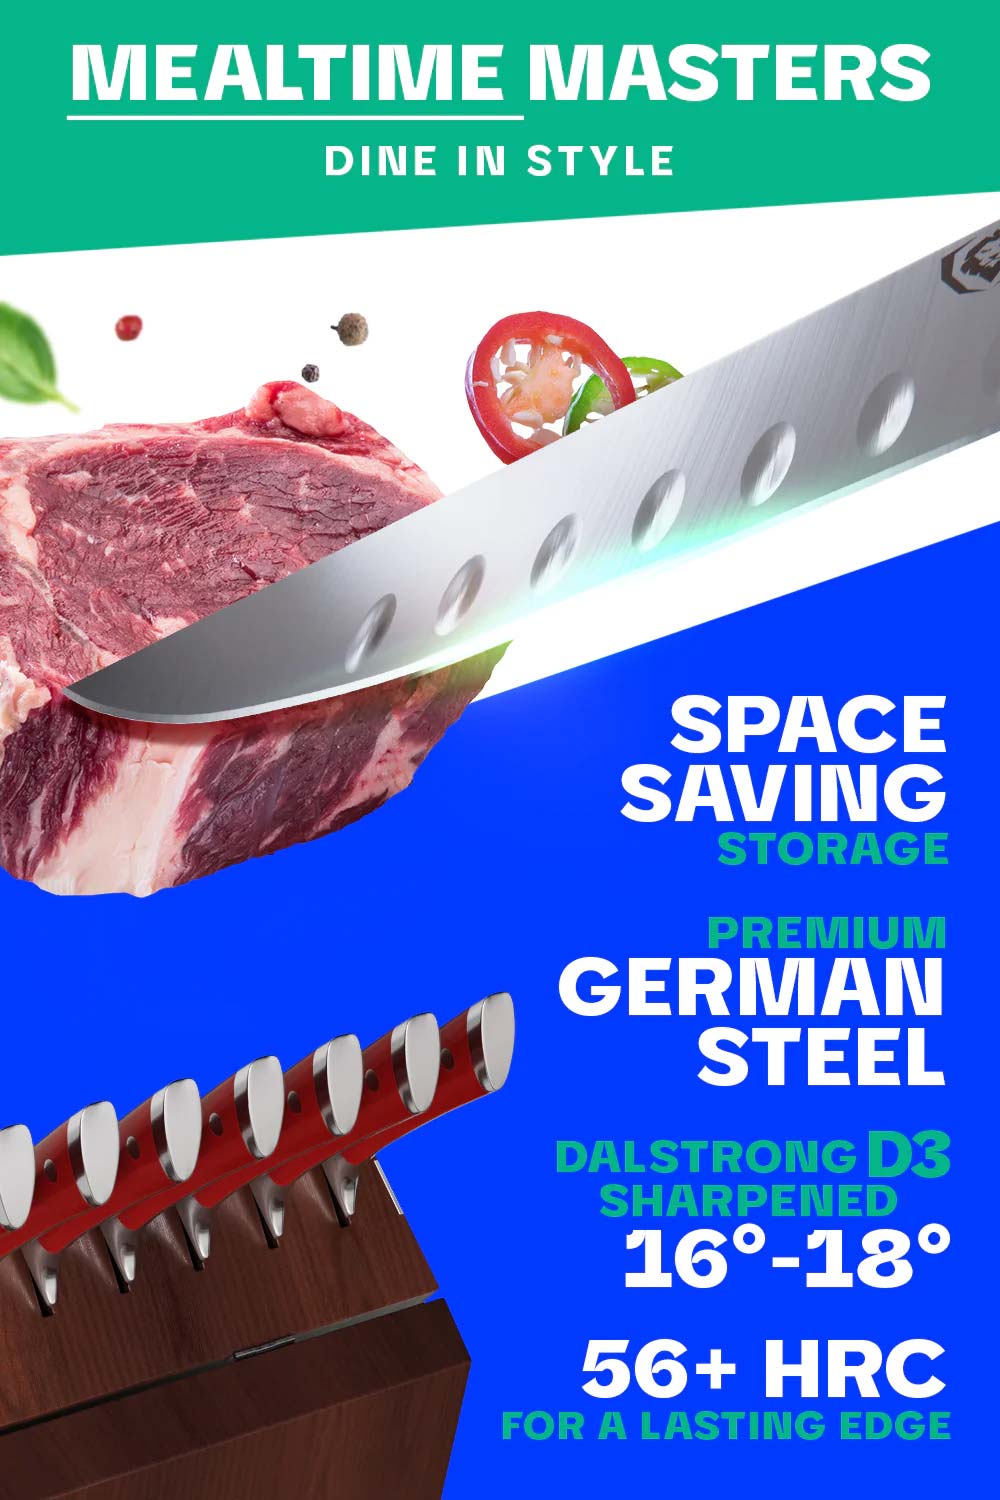 Dalstrong gladiator series 8 piece steak knfie set featuring it's razor sharp german steel blade.